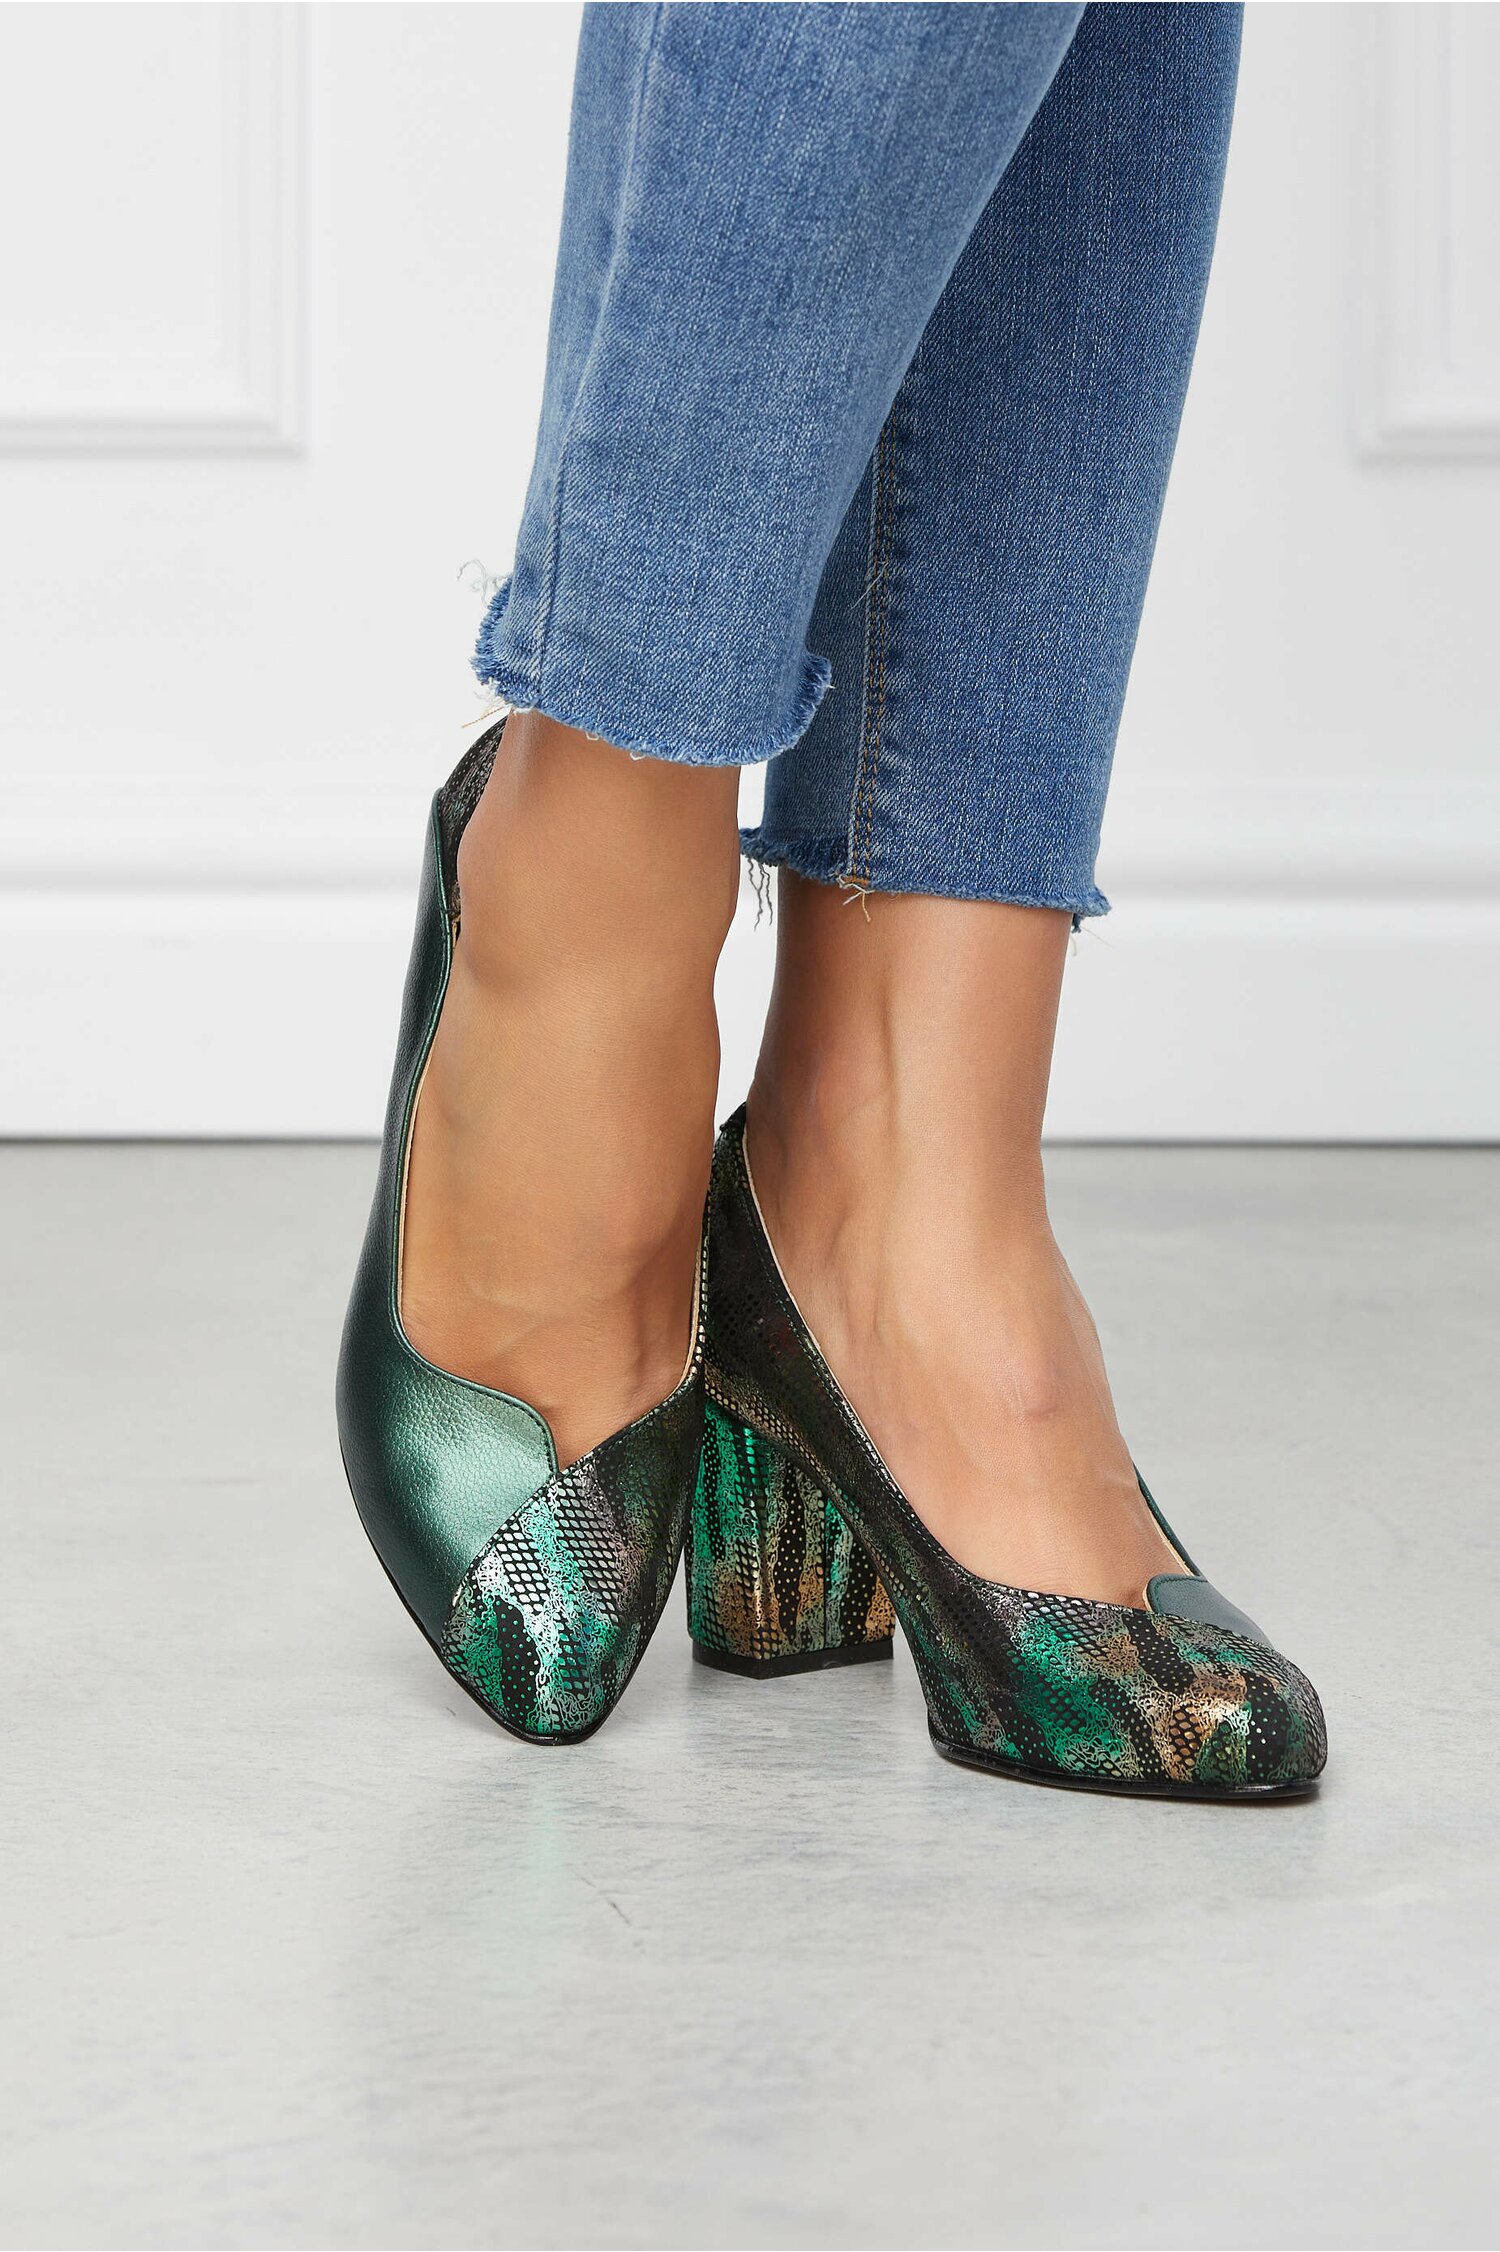 Pantofi Greenary verde inchis cu imprimeuri colorate metalizate Încălţăminte 2022-11-24